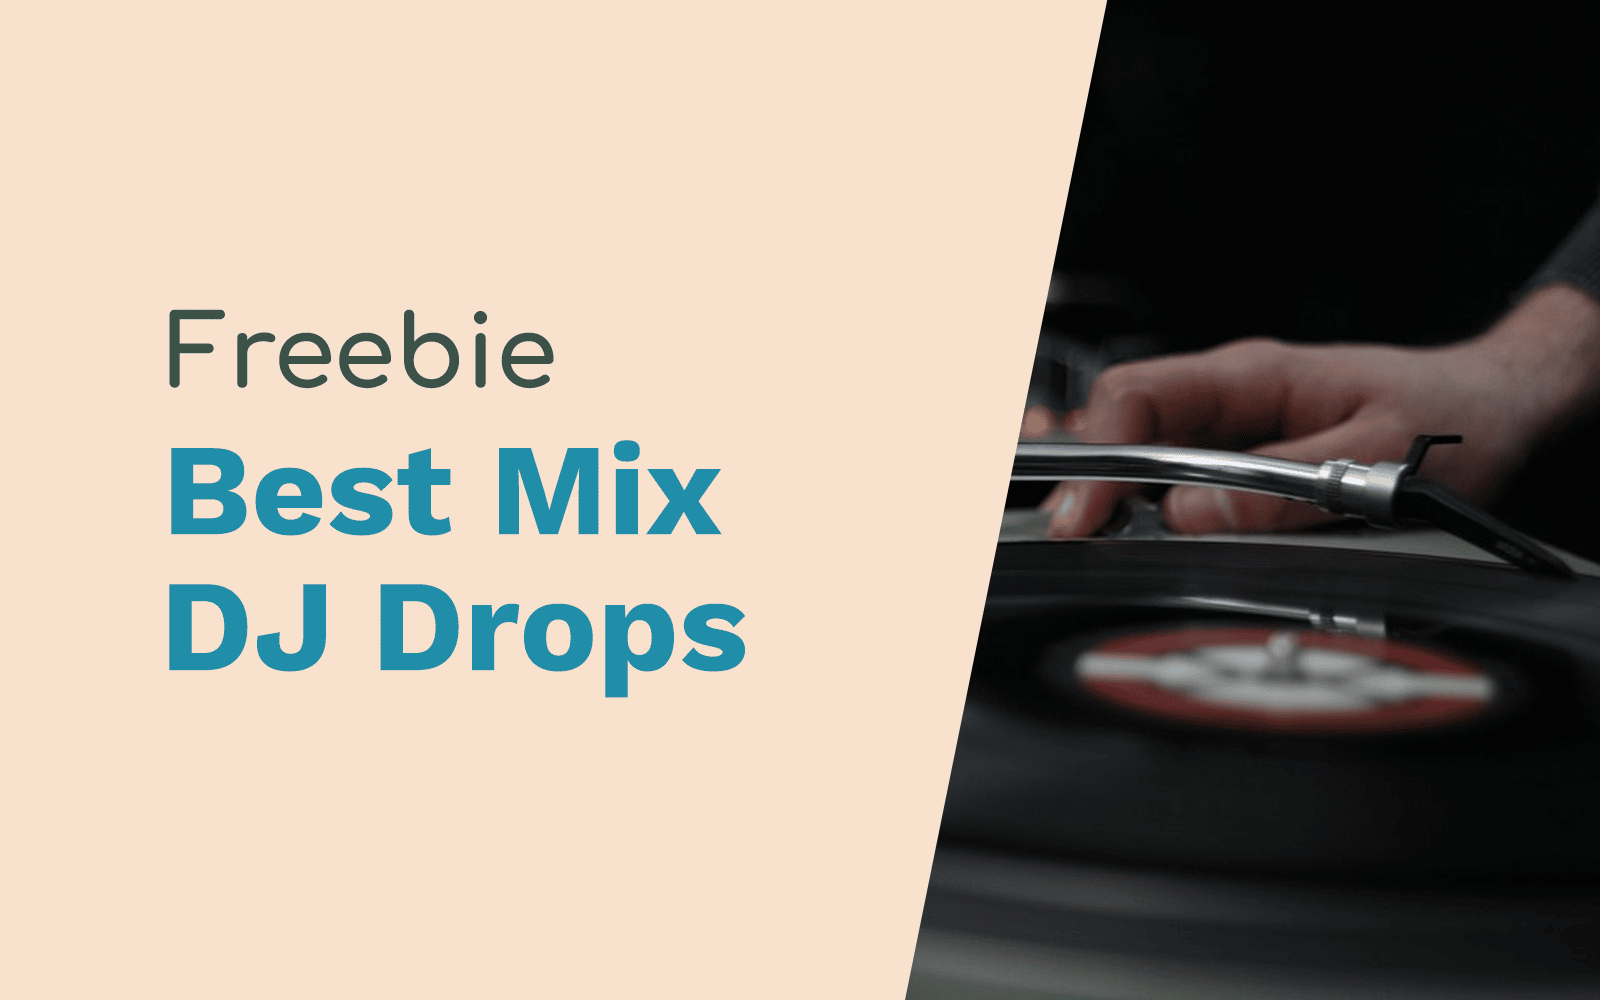 DJ Drops – All The Hits, The Best Mix DJ Drops dj drops Music Radio Creative